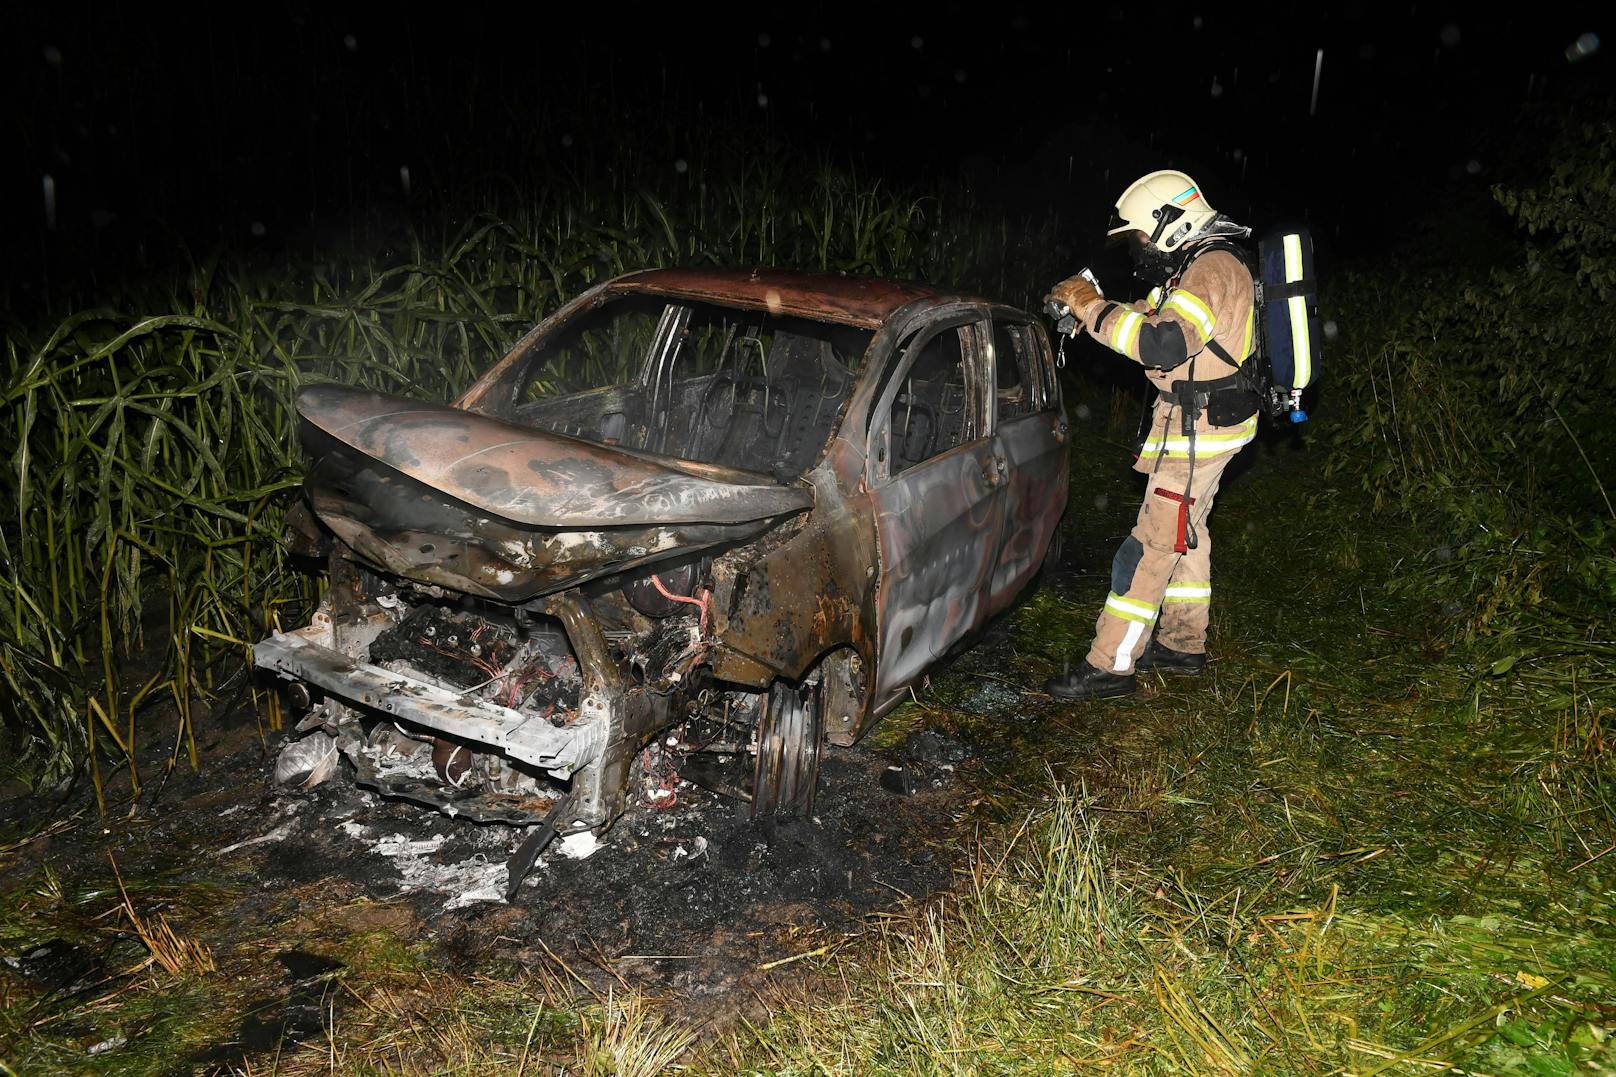 Fahrzeugbrand in Langkampfen, Bezirk Kufstein, am 30. Juli 2021